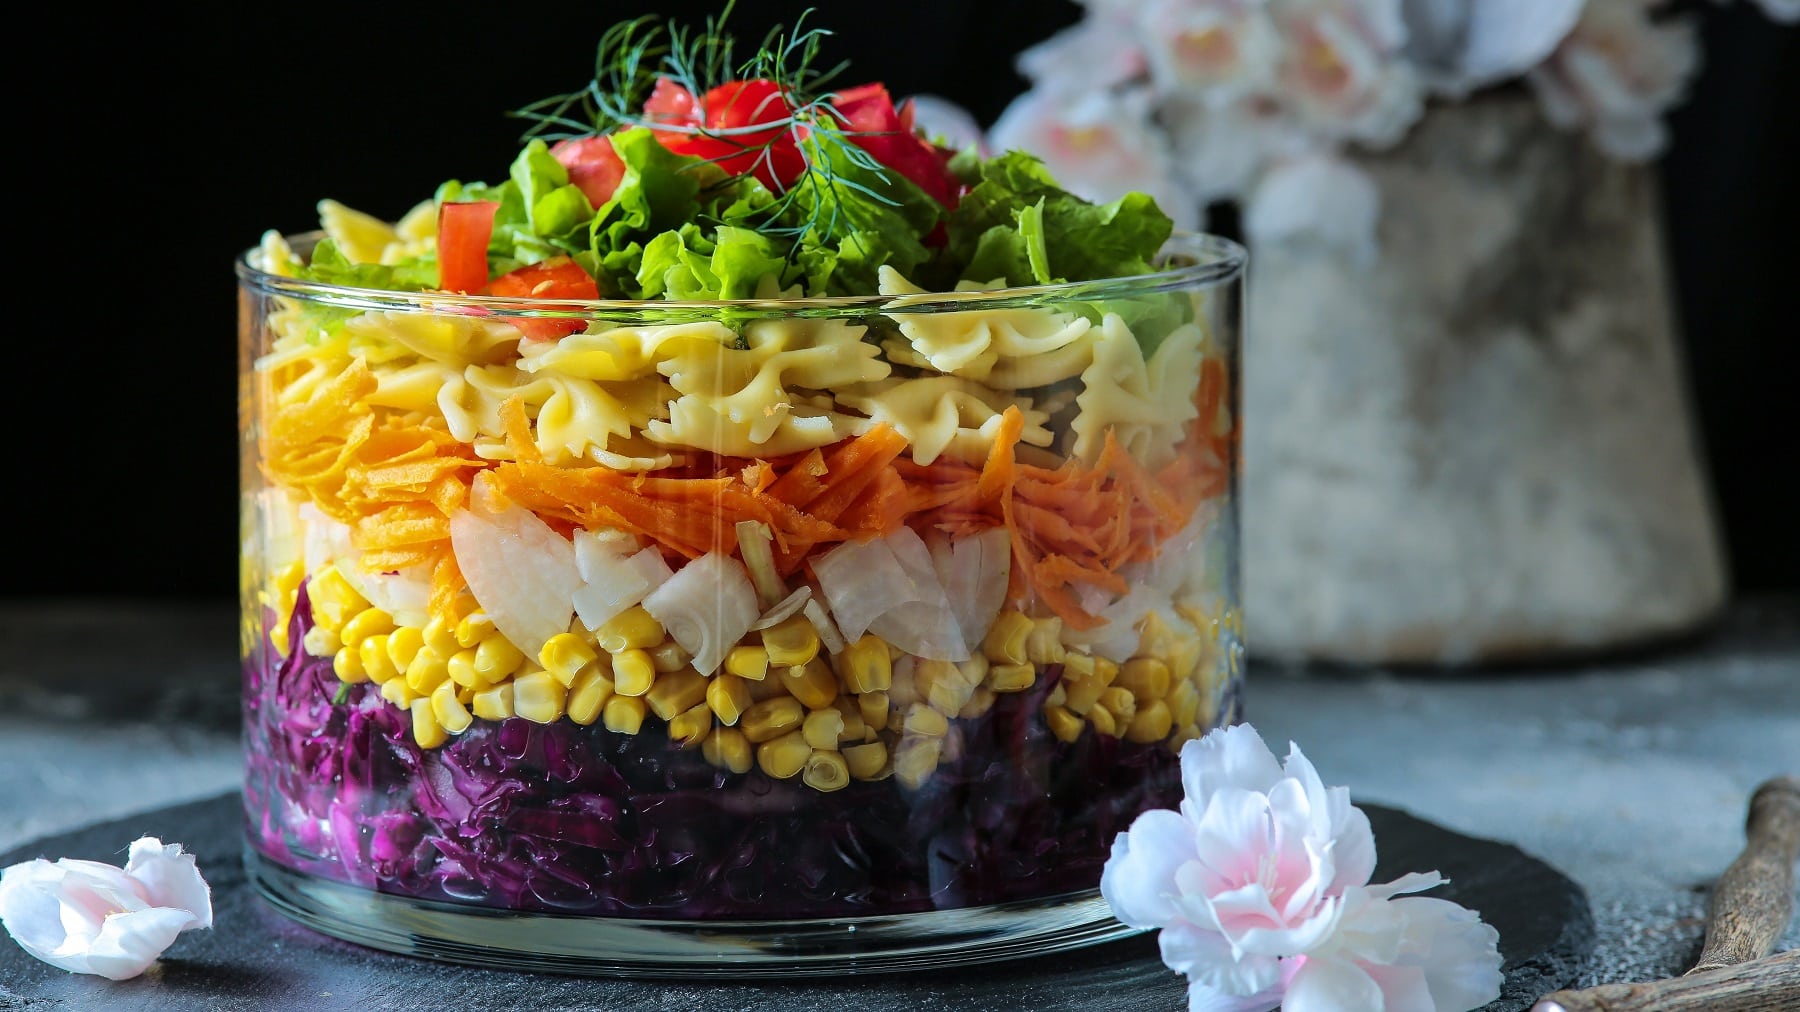 Eine große Glasschüssel mit dem geschichteten Salat auf einer schwarzen Schieferplatte mit weißen Blüten und Knospen im Hintergrund.